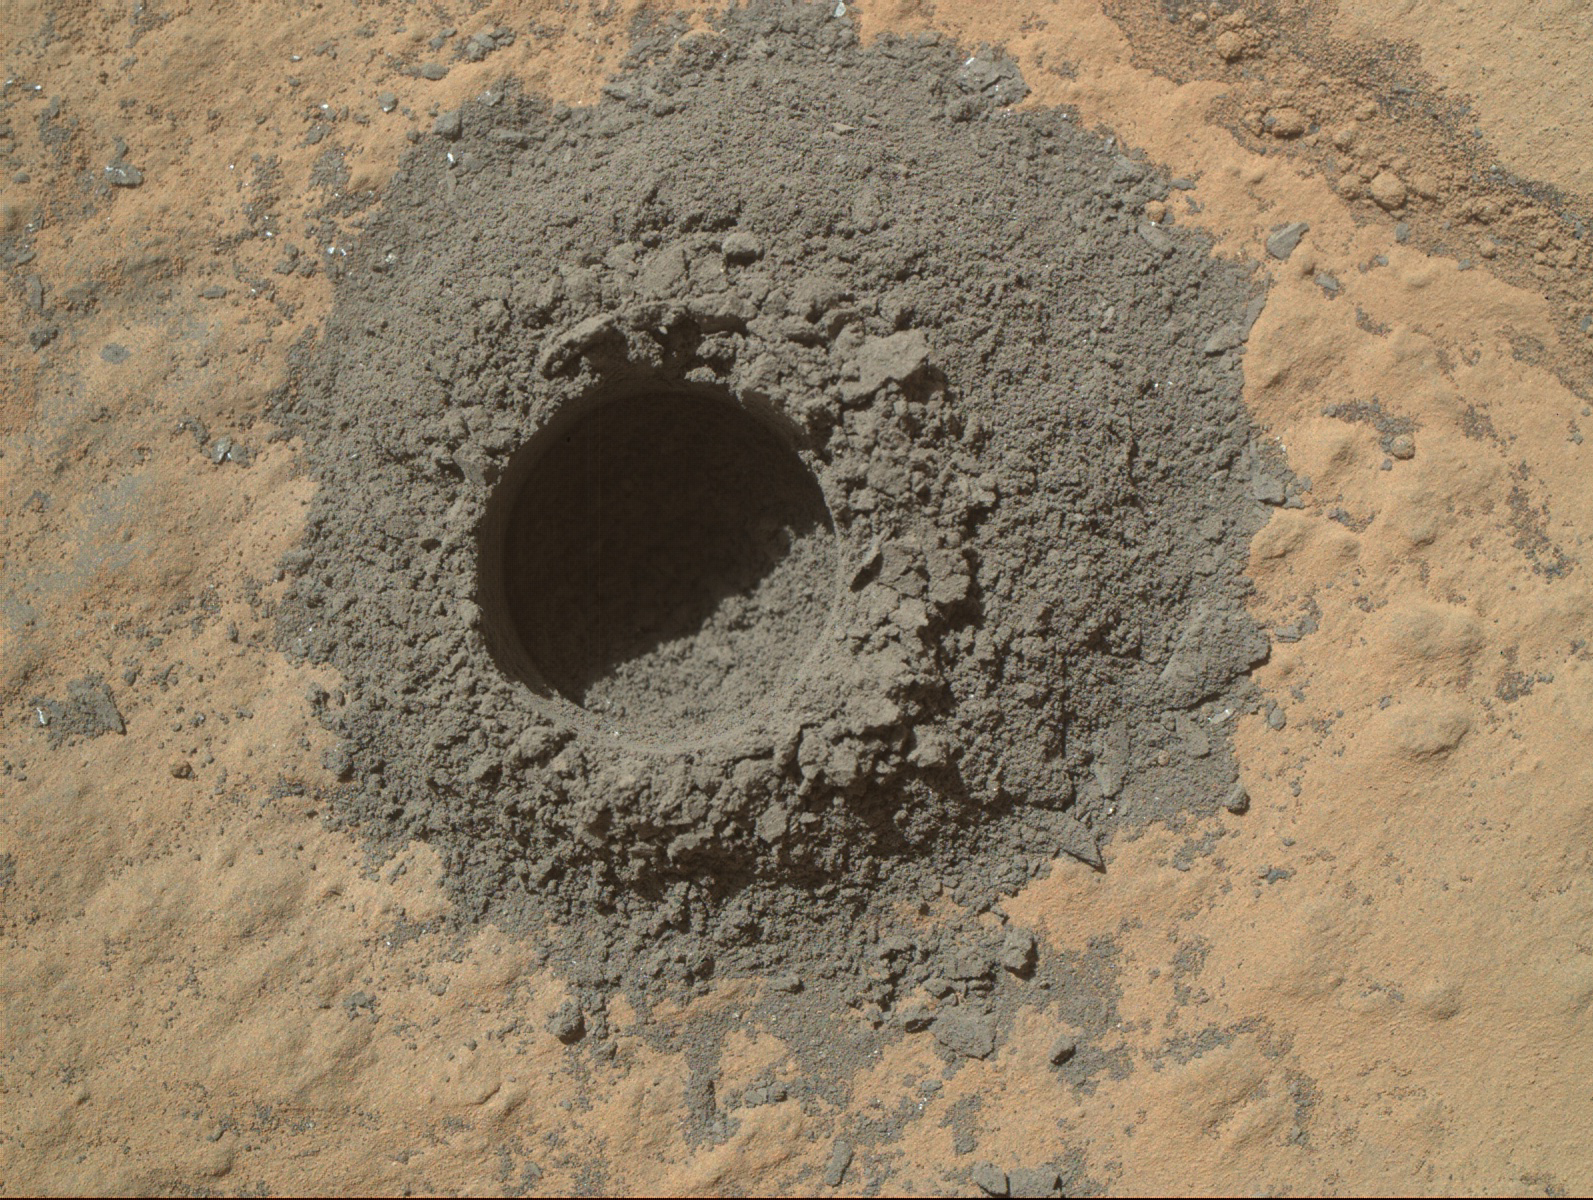 Un agujero en roca marciana perforada por Curiosity